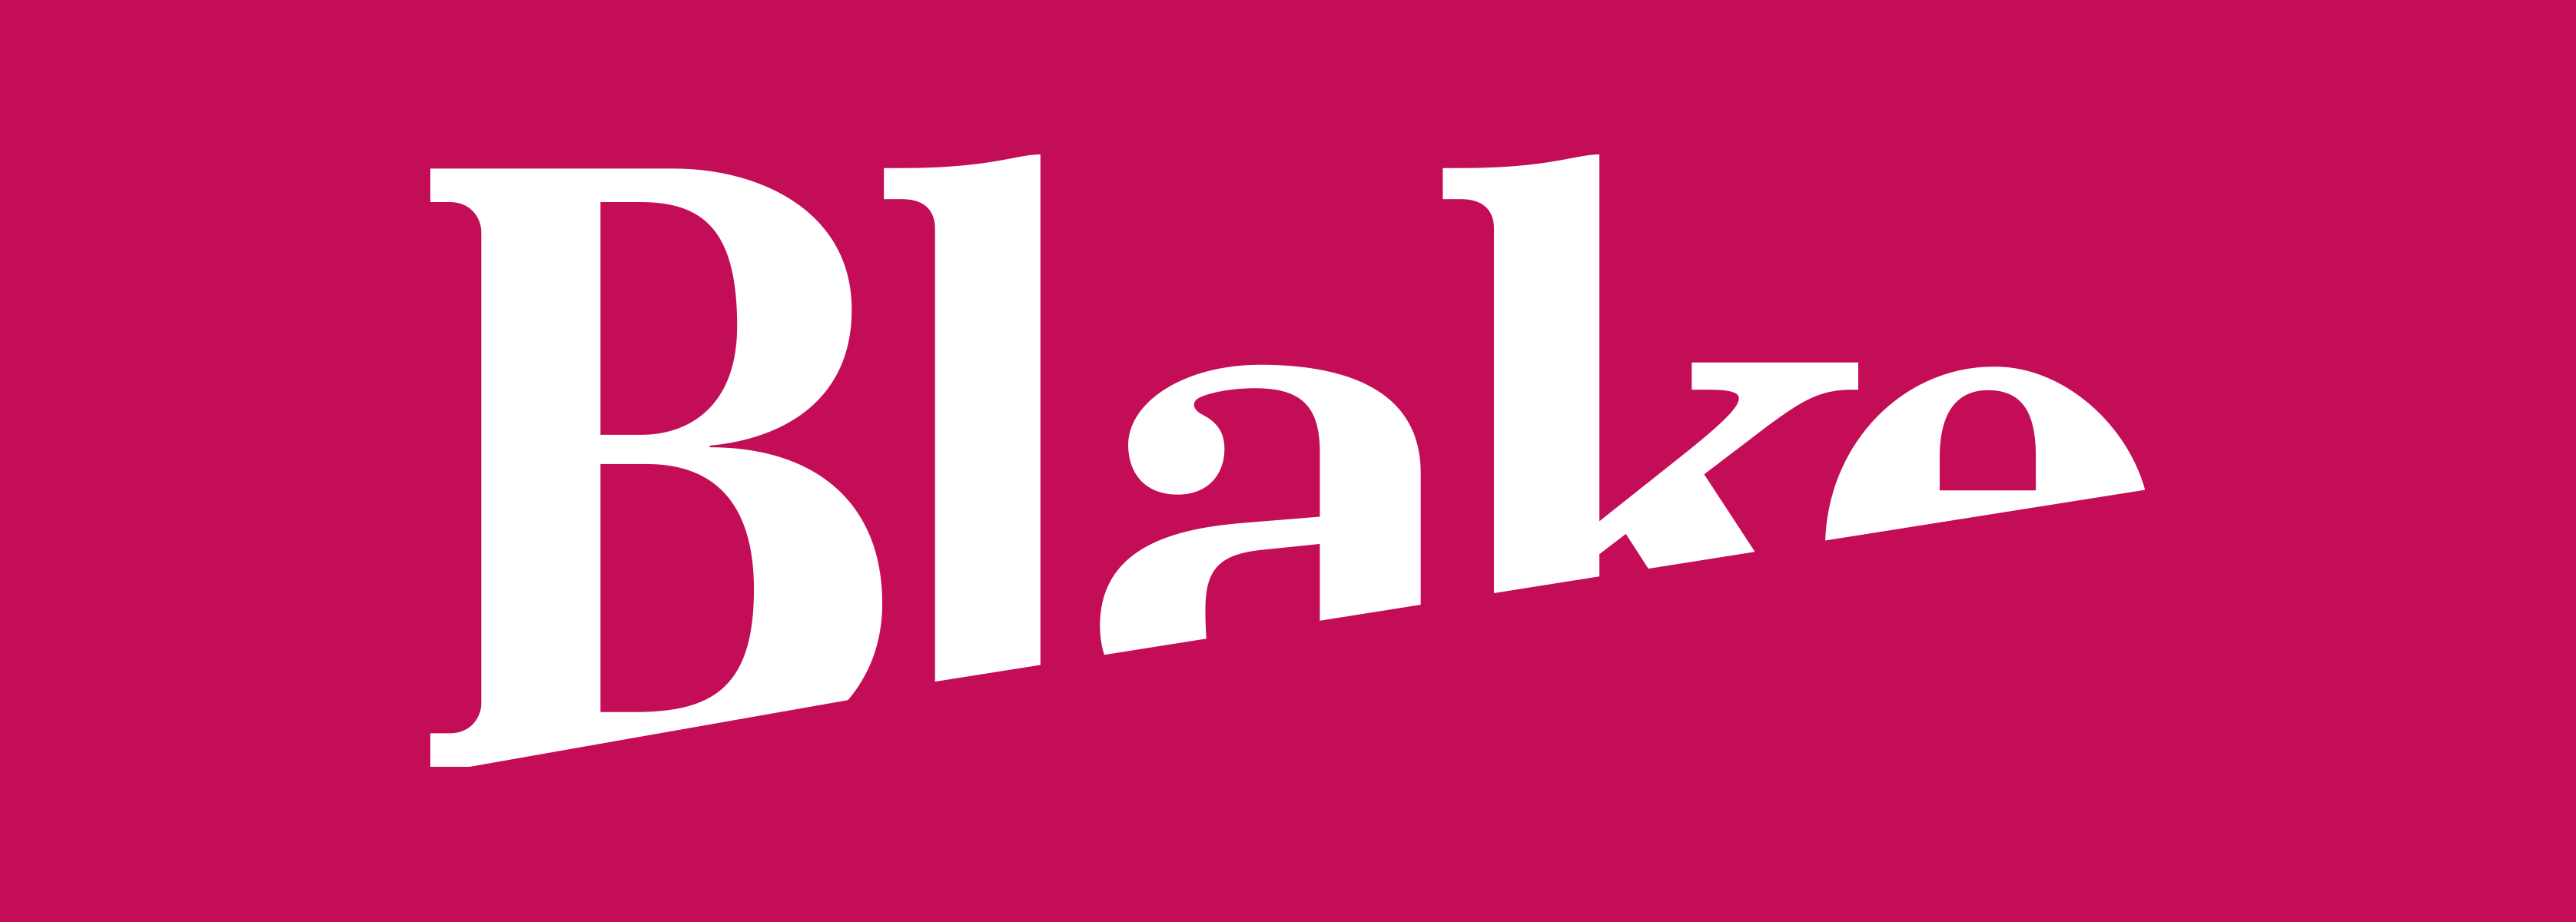 Blake Logo - Blake Envelopes | Silk Pearce